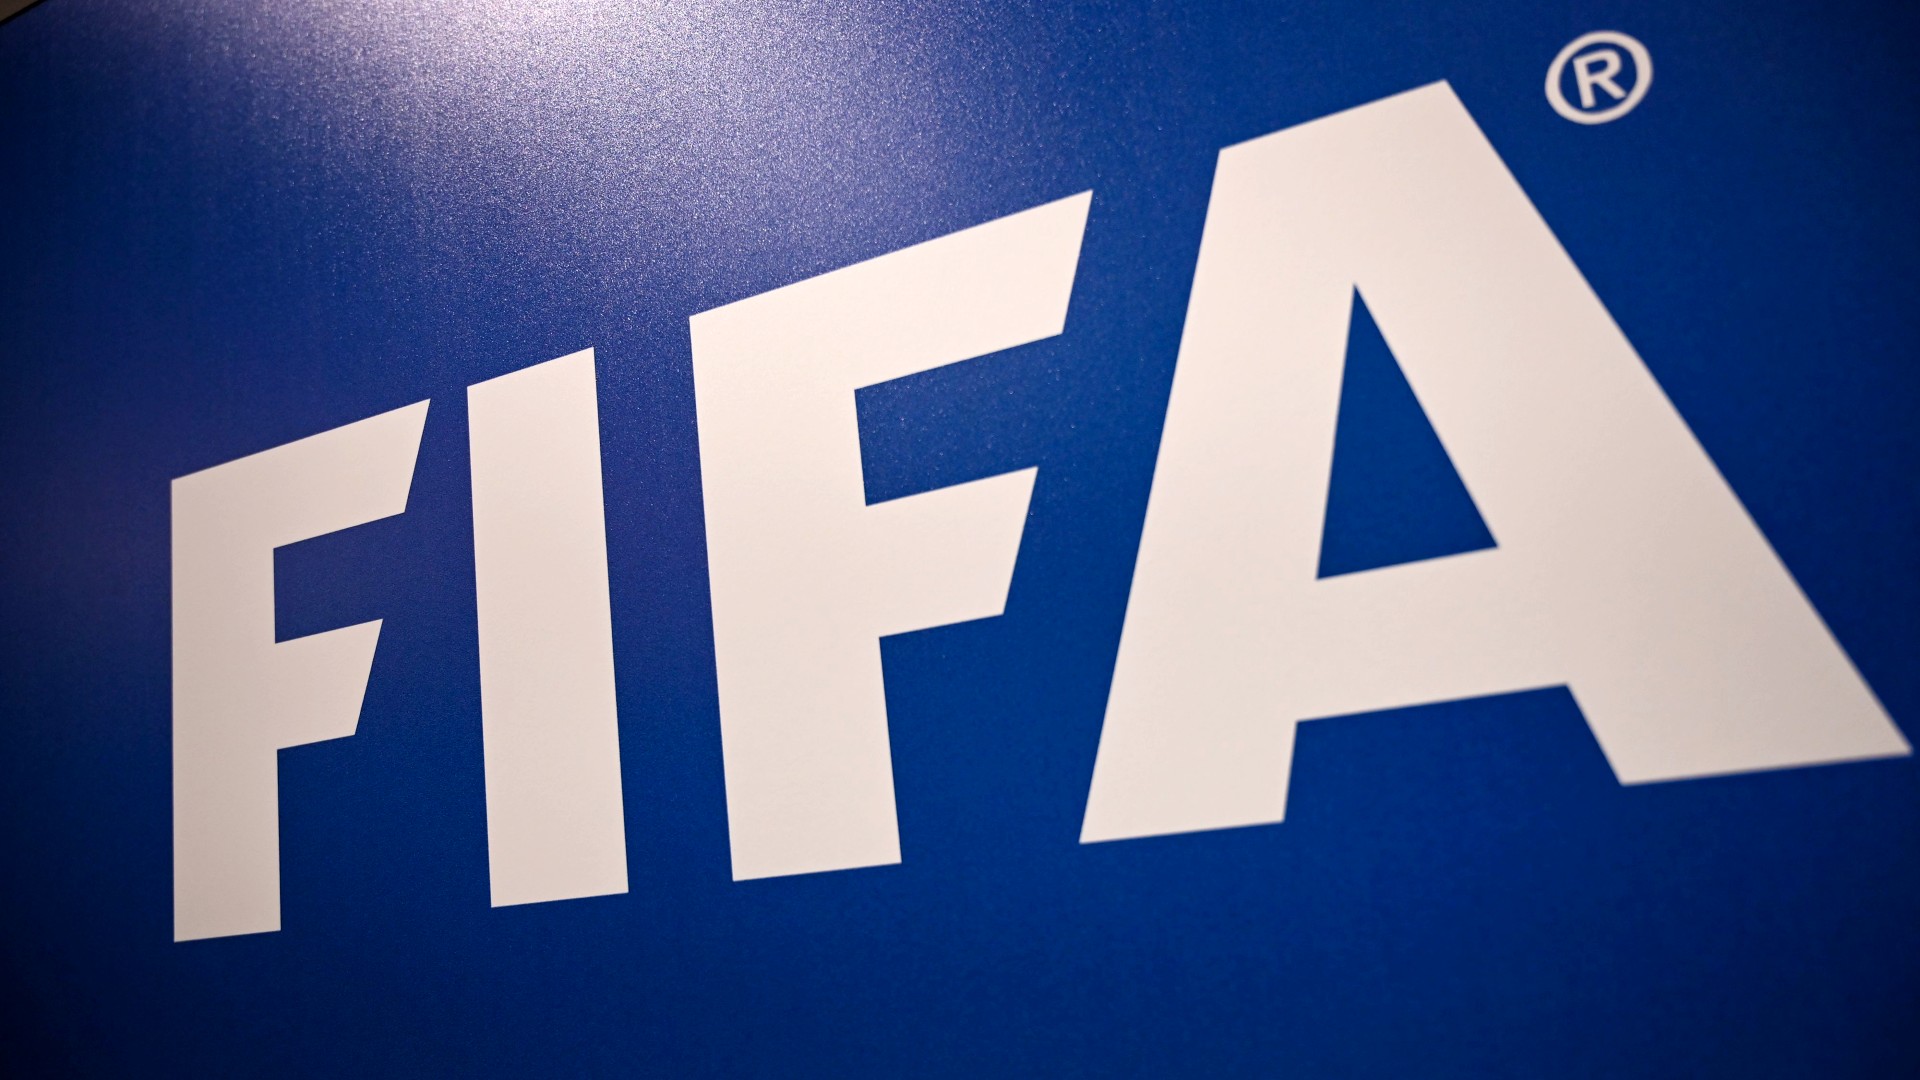 ՖԻՖԱ-ն օտարերկրյա ֆուտբոլիստներին և մարզիչներին թույլատրել է խզել պայմանագրերը Ռուսաստանի պրեմիեր լիգայի ակումբների հետ